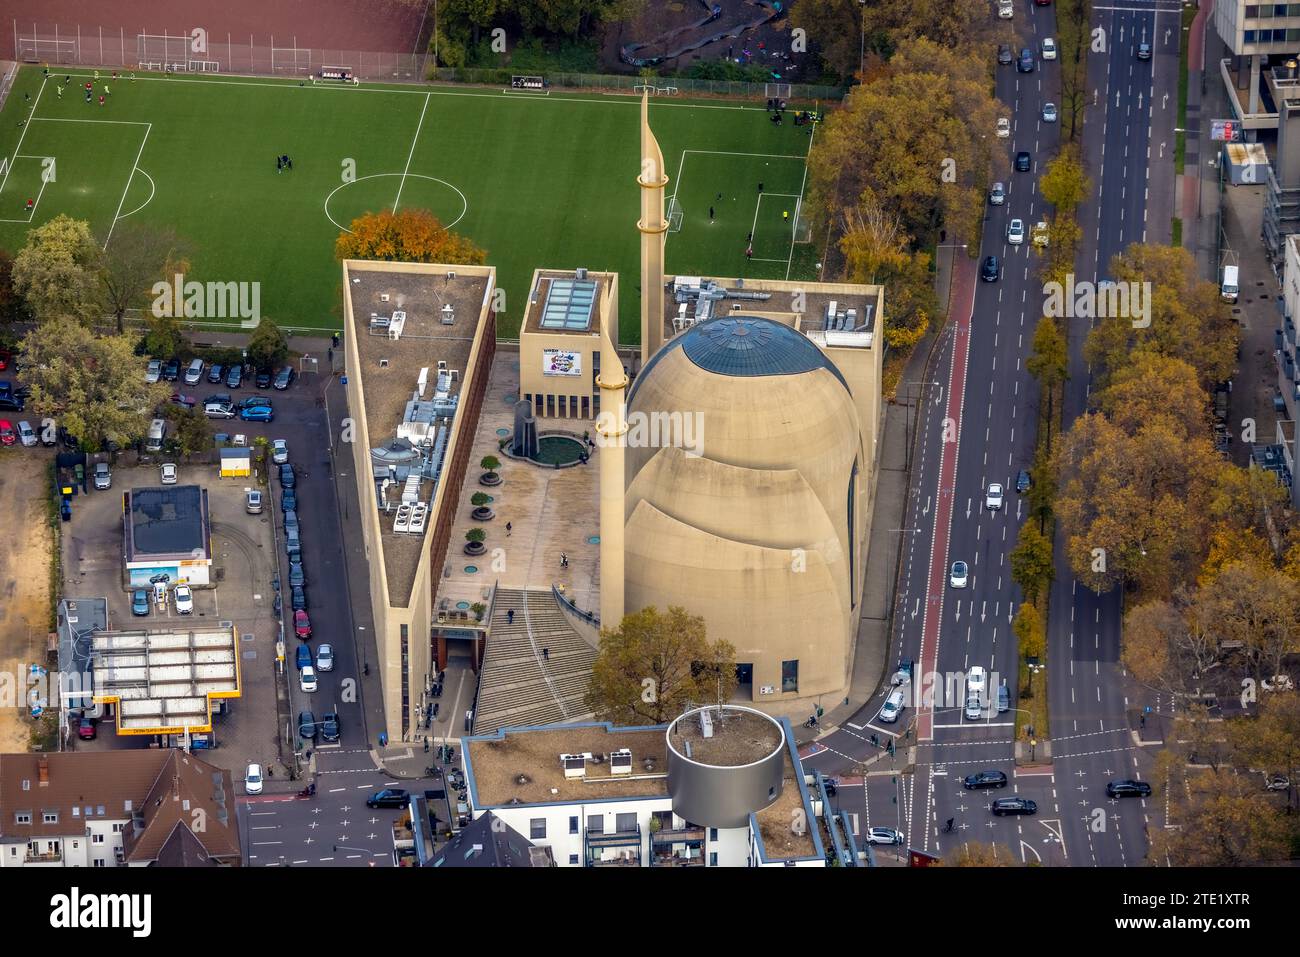 Vista aerea, Moschea centrale Ditib di Colonia con design moderno, nuovo centro sportivo del quartiere, campo da calcio Ehrenfeld, Ehrenfeld, Colonia, Rhinel Foto Stock